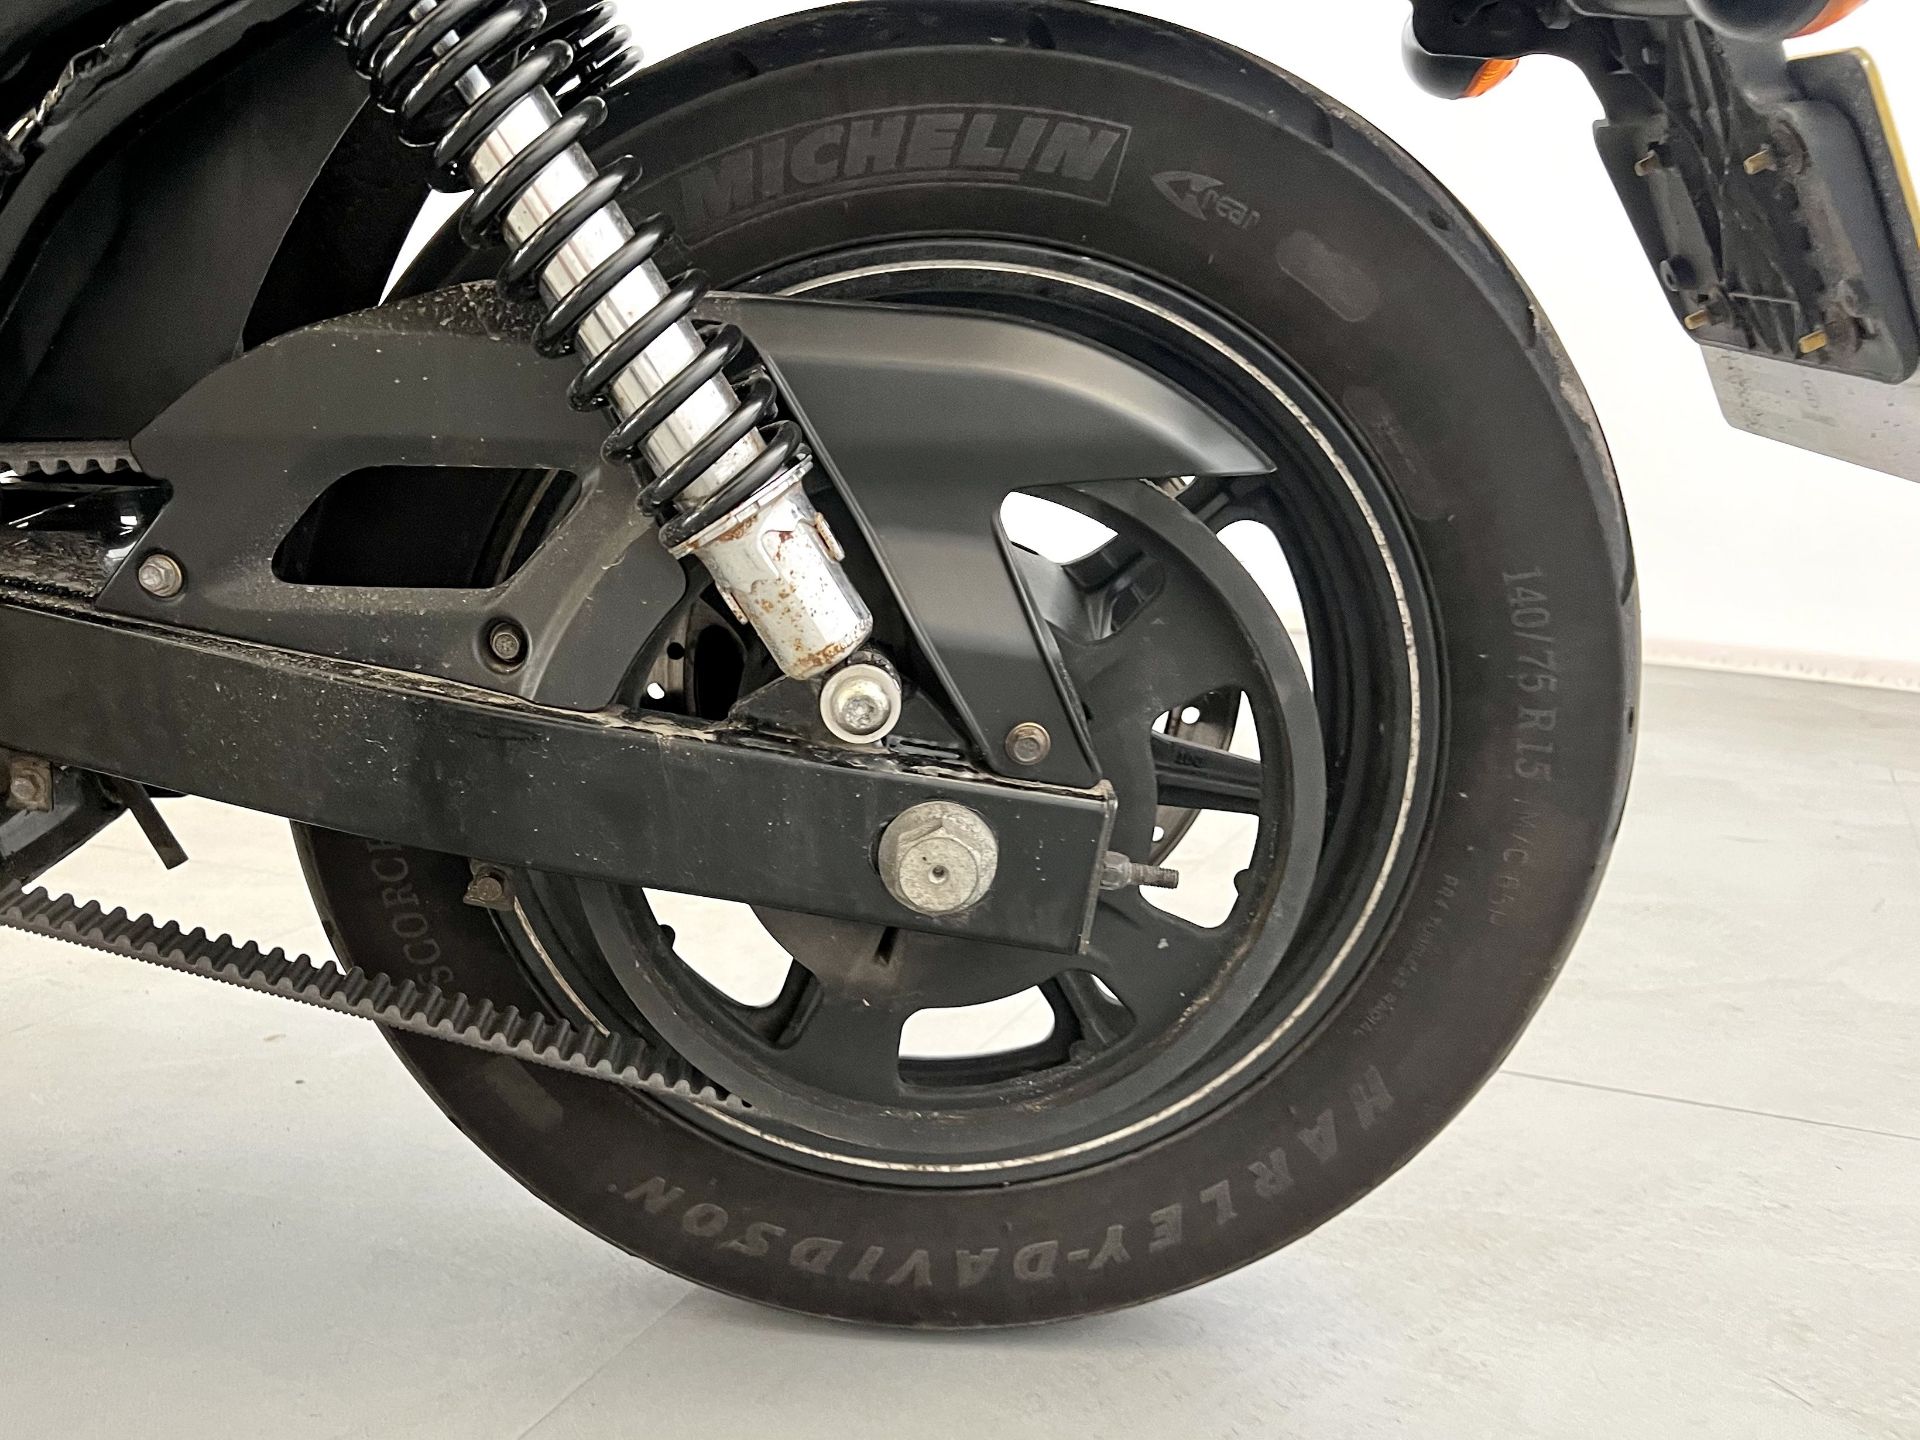 Harley-Davidson XG1 - Image 9 of 14